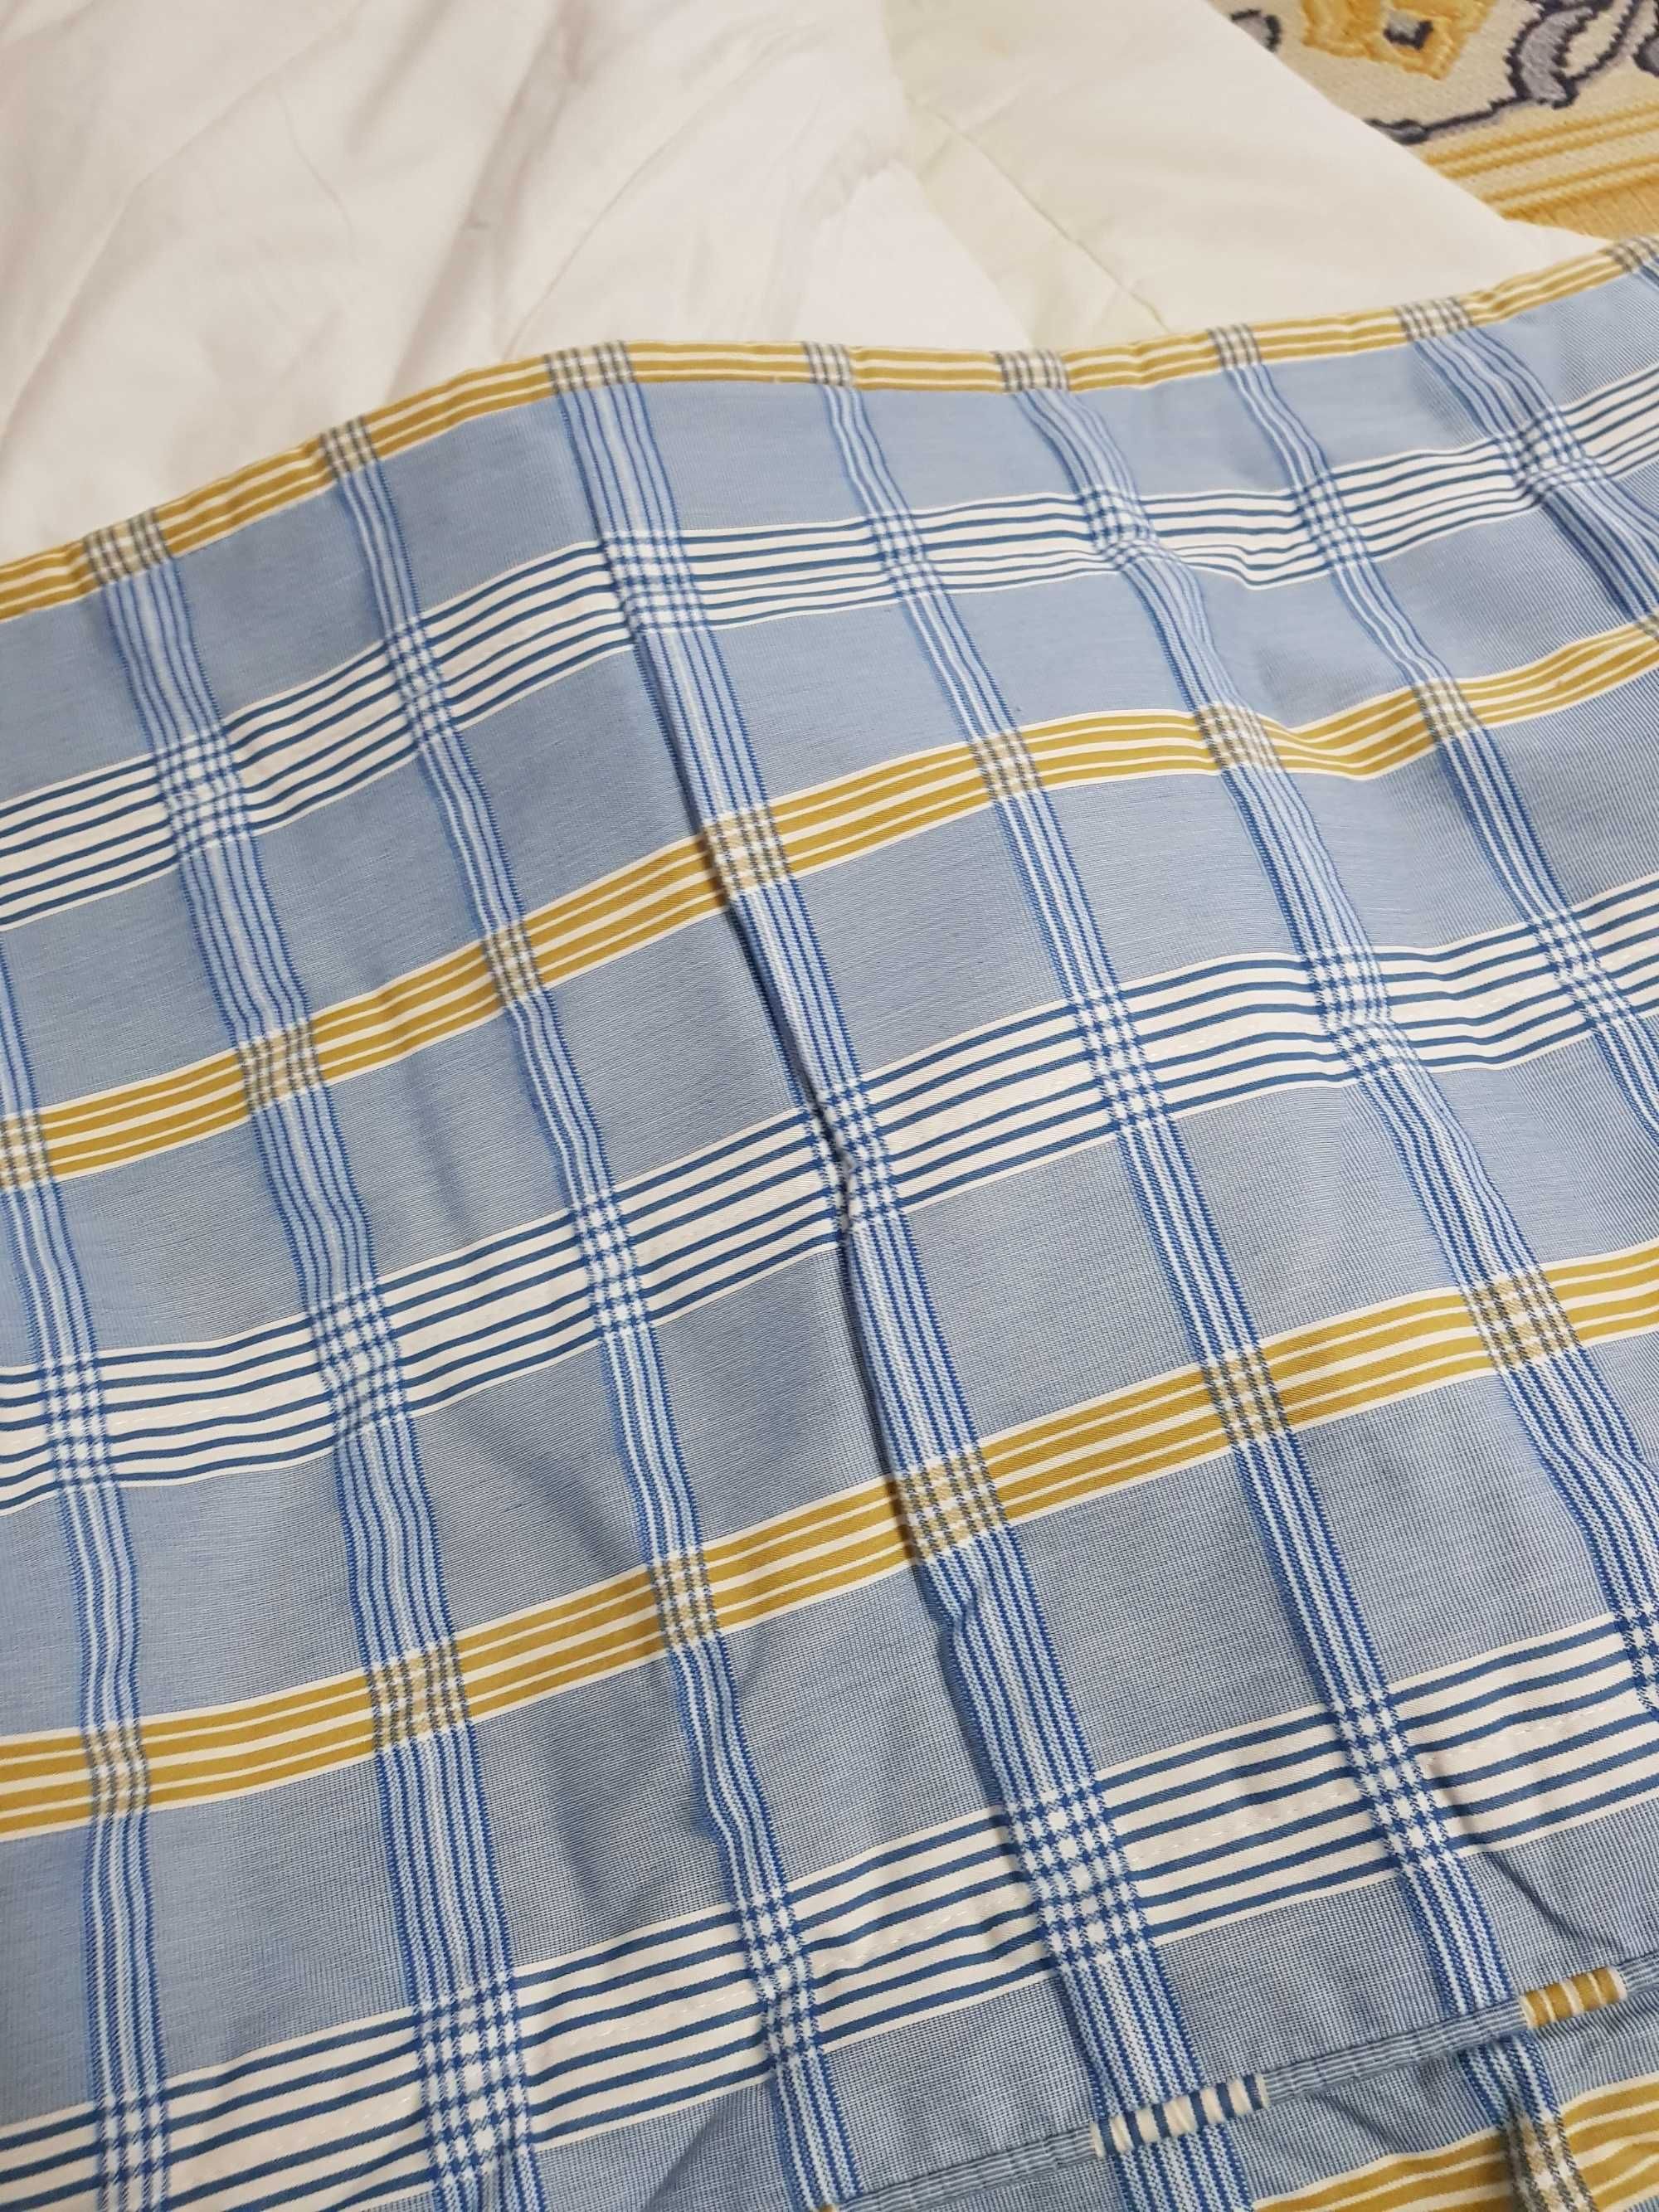 Colcha de cama Xadrez Tons Azul e Amarelo